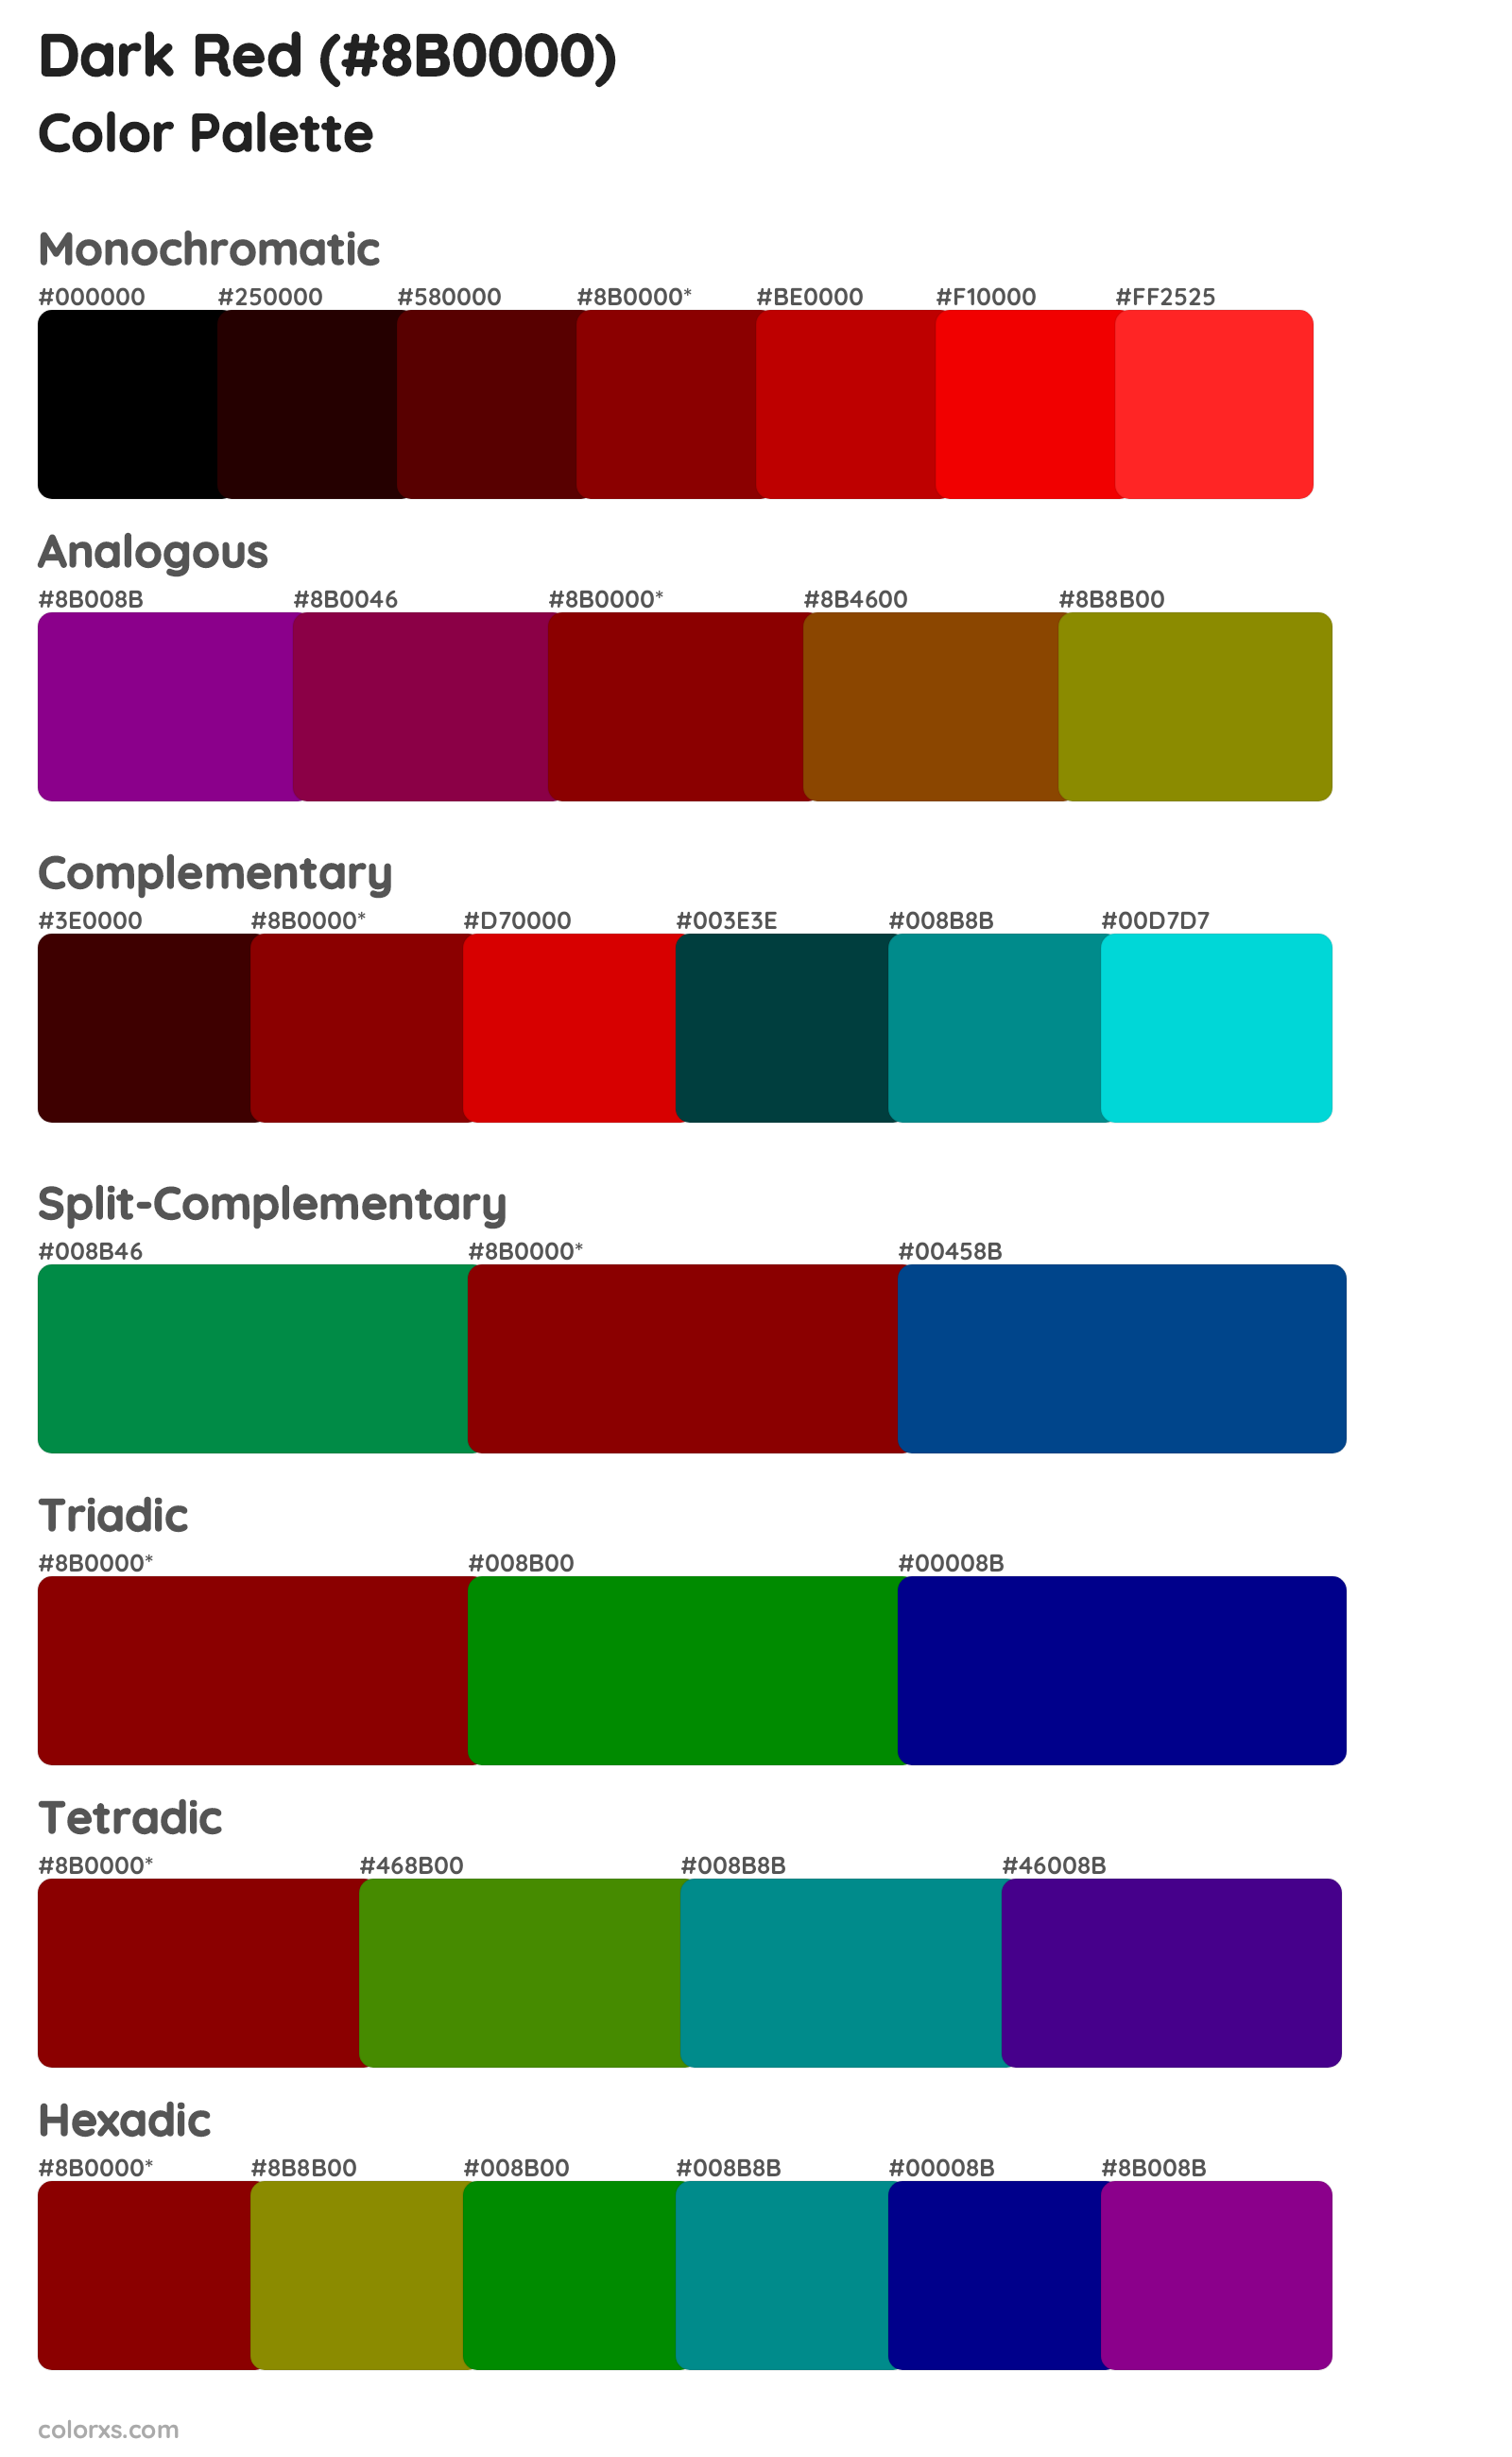 Dark Red palettes color scheme combinations - colorxs.com